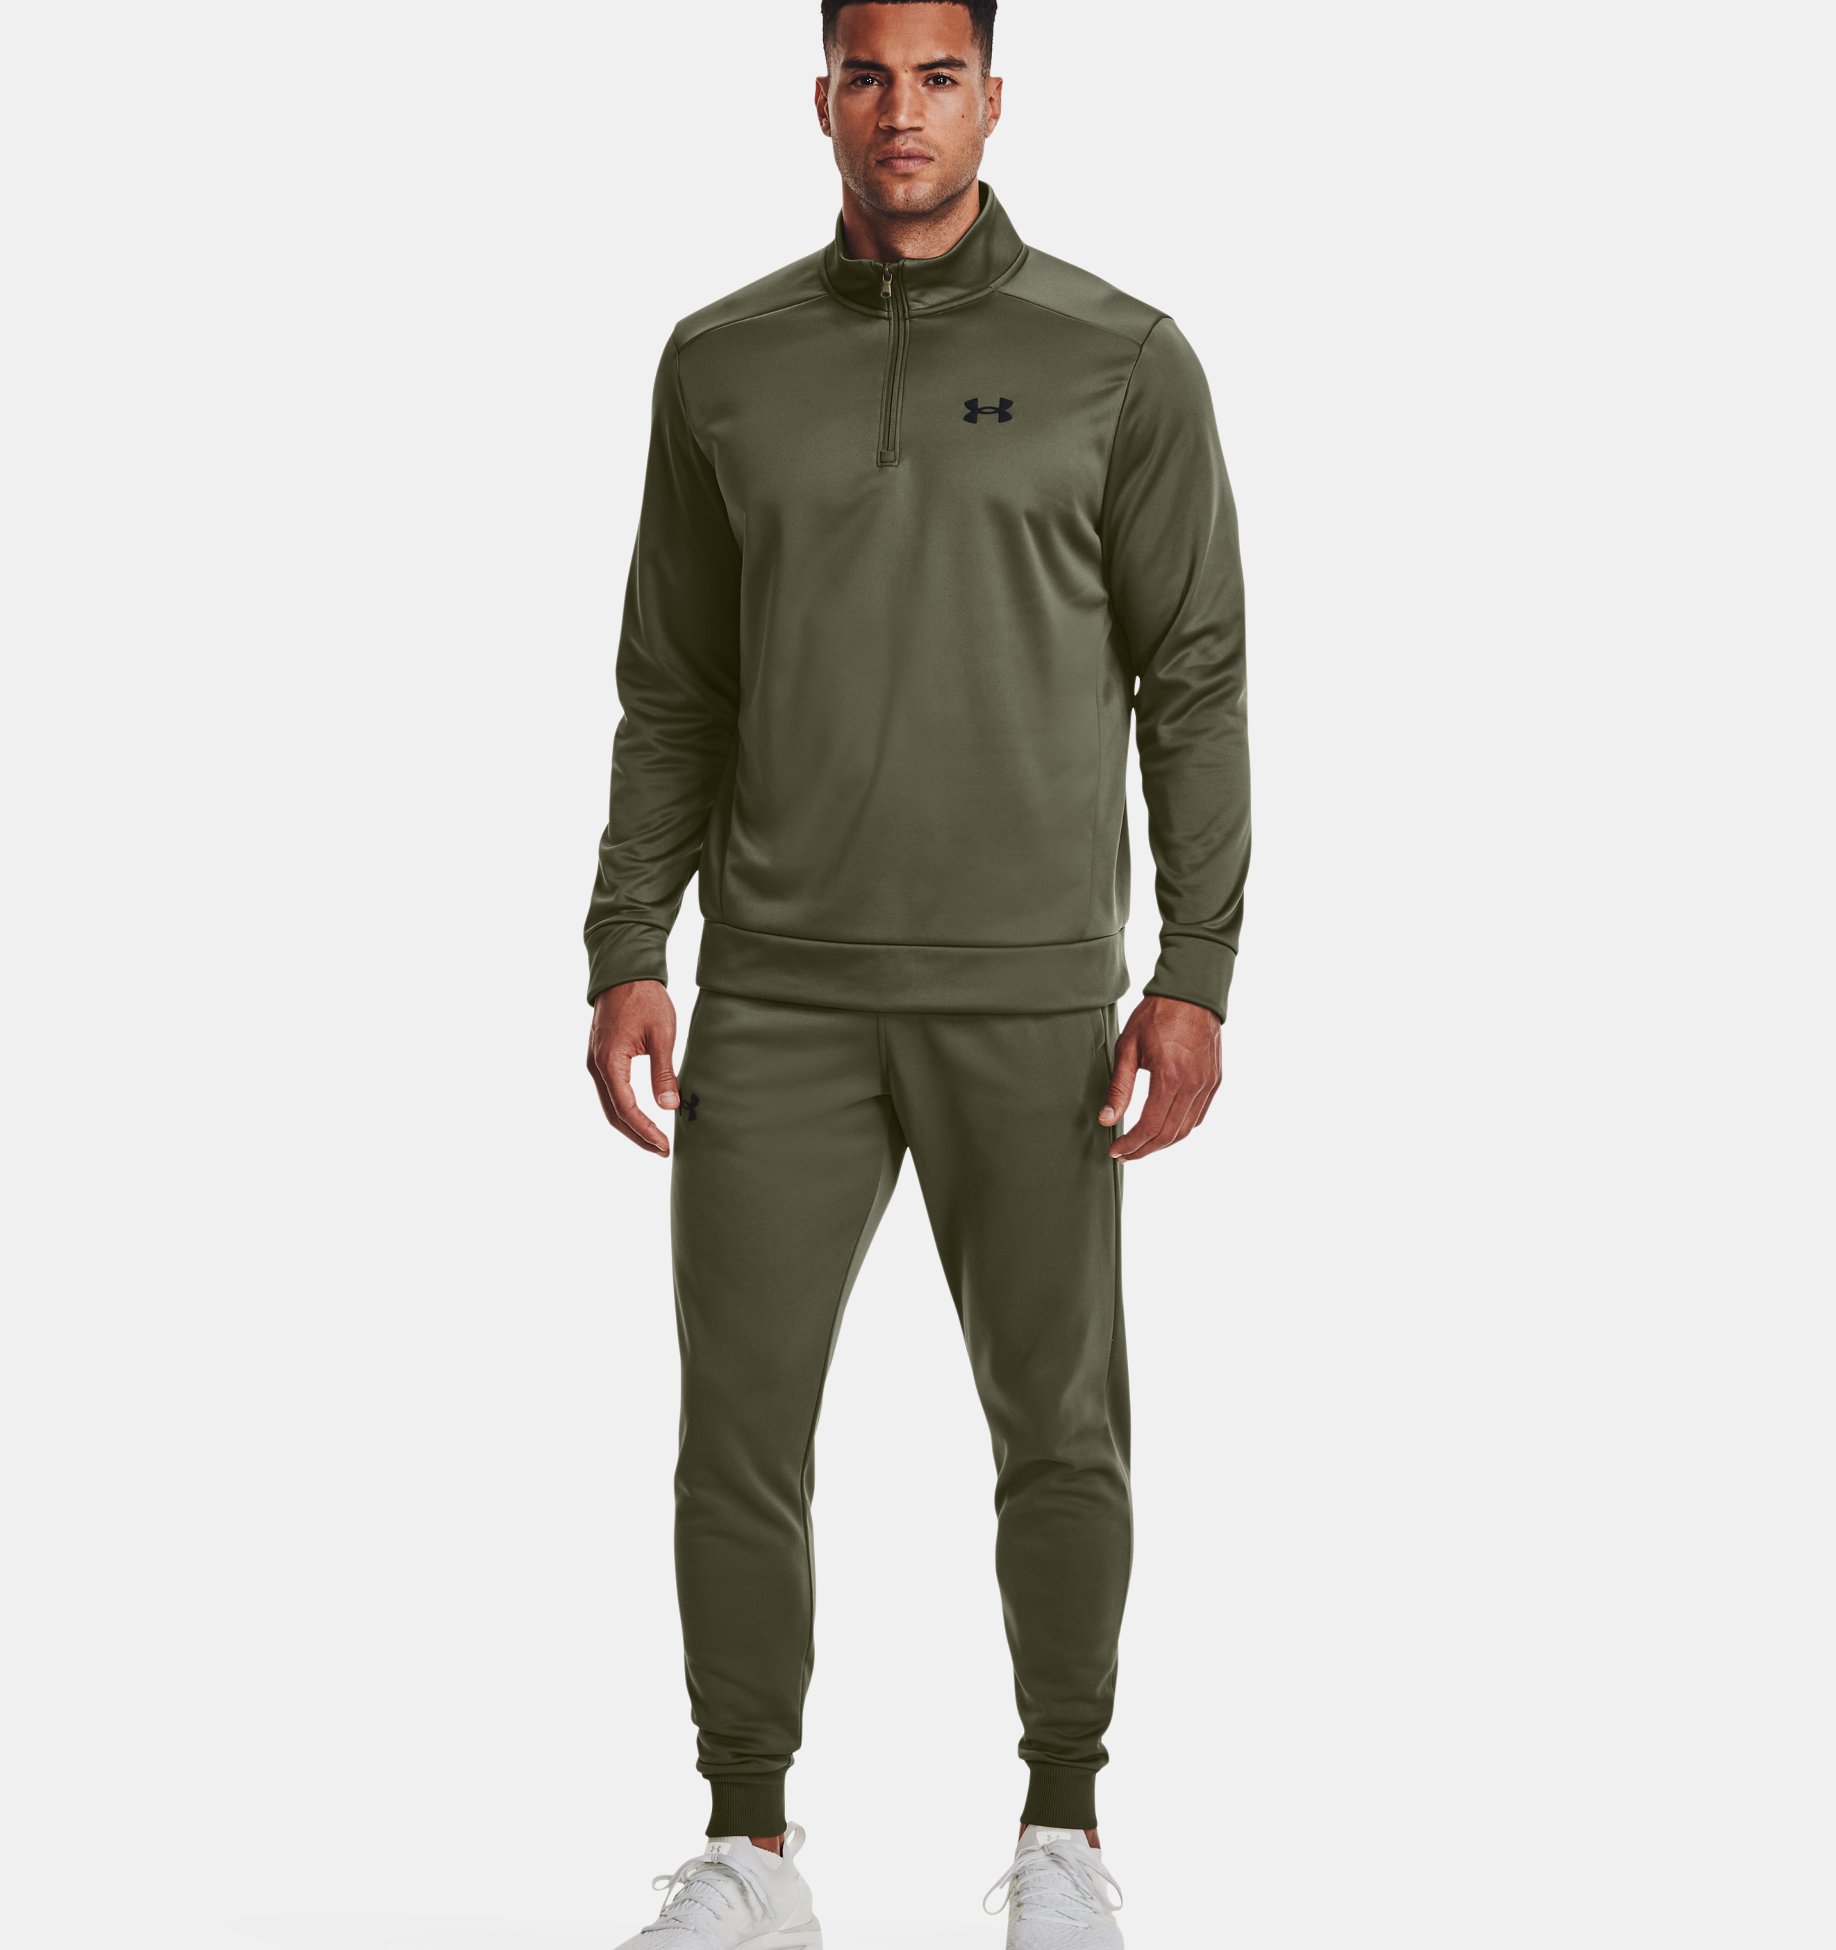 Under Armour Fleece® ¼ Zip Marine OD Green / Black (Men's)